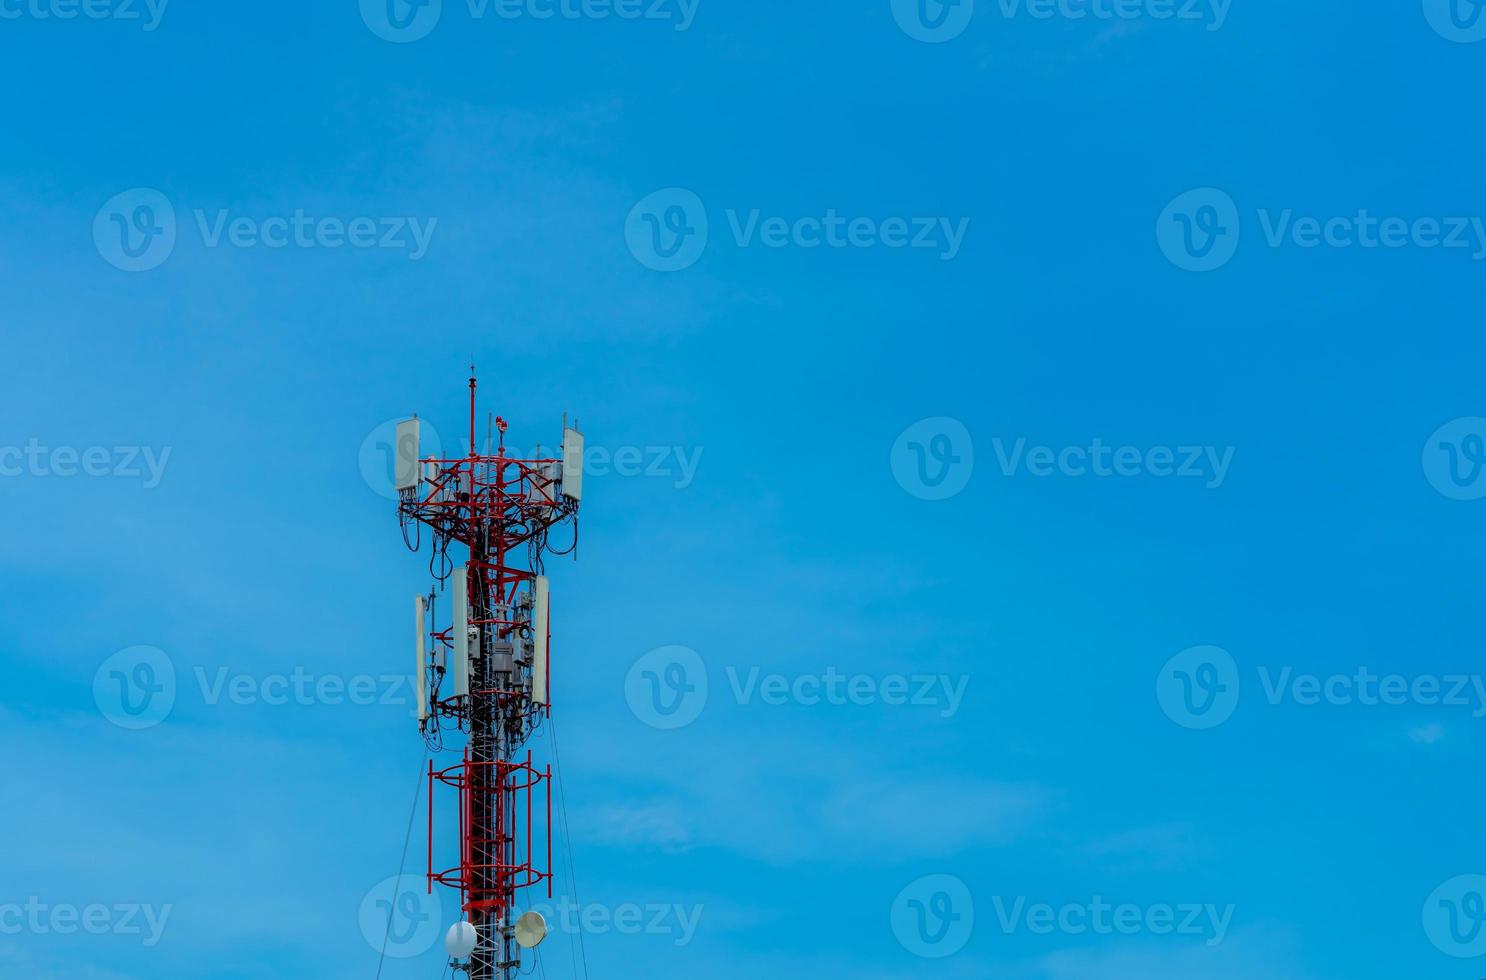 telekommunikationstorn med klarblå himmel bakgrund. antenn på blå himmel. radio och satellitstolpe. kommunikationsteknologi. telekommunikationsindustrin. mobil eller telekom 4g-nätverk. teknologi foto